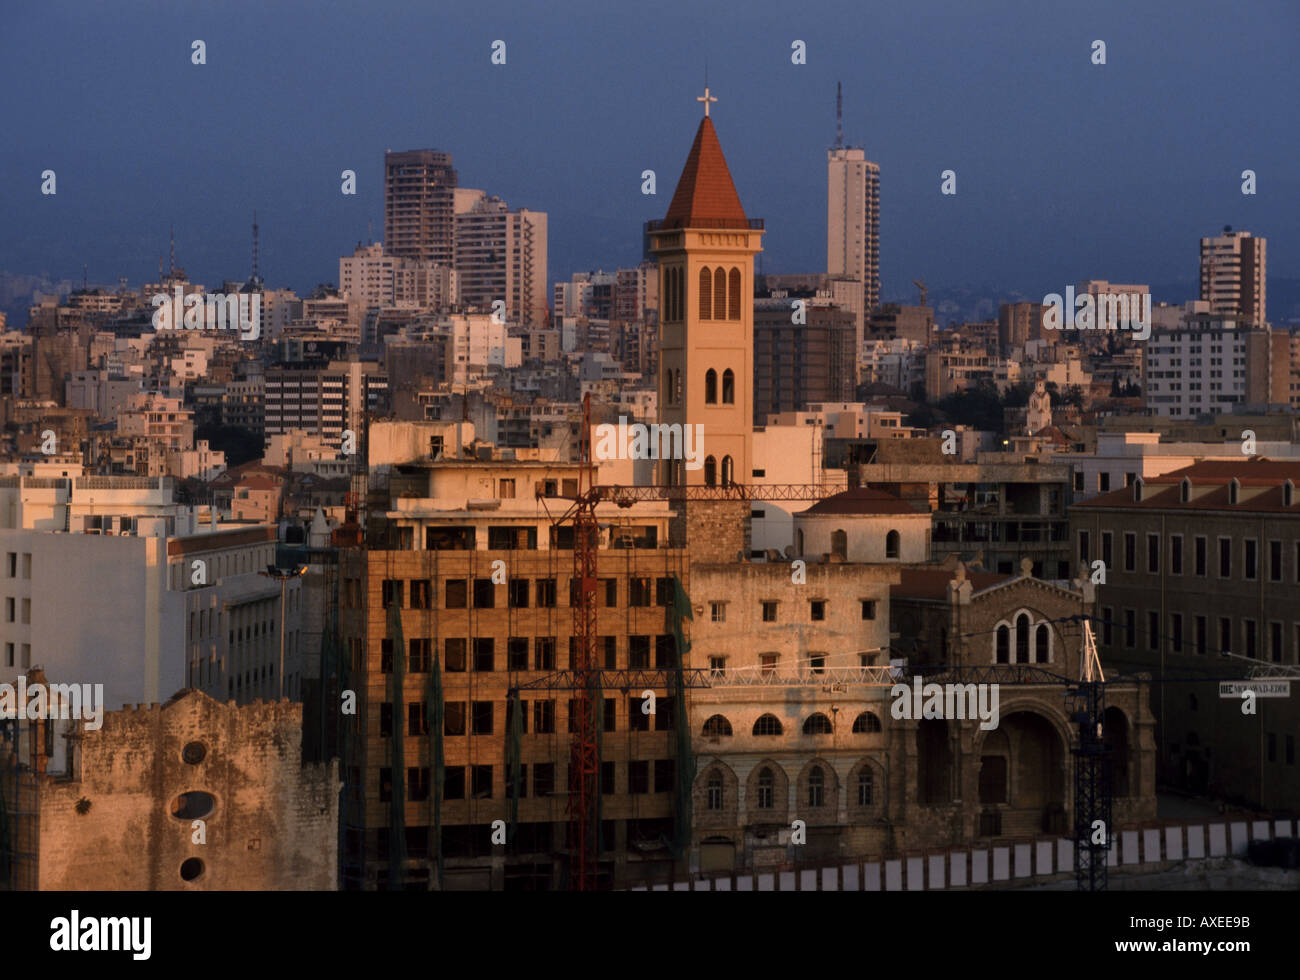 Vue générale du centre-ville de Beyrouth Liban avec l'église chrétienne en premier plan Banque D'Images